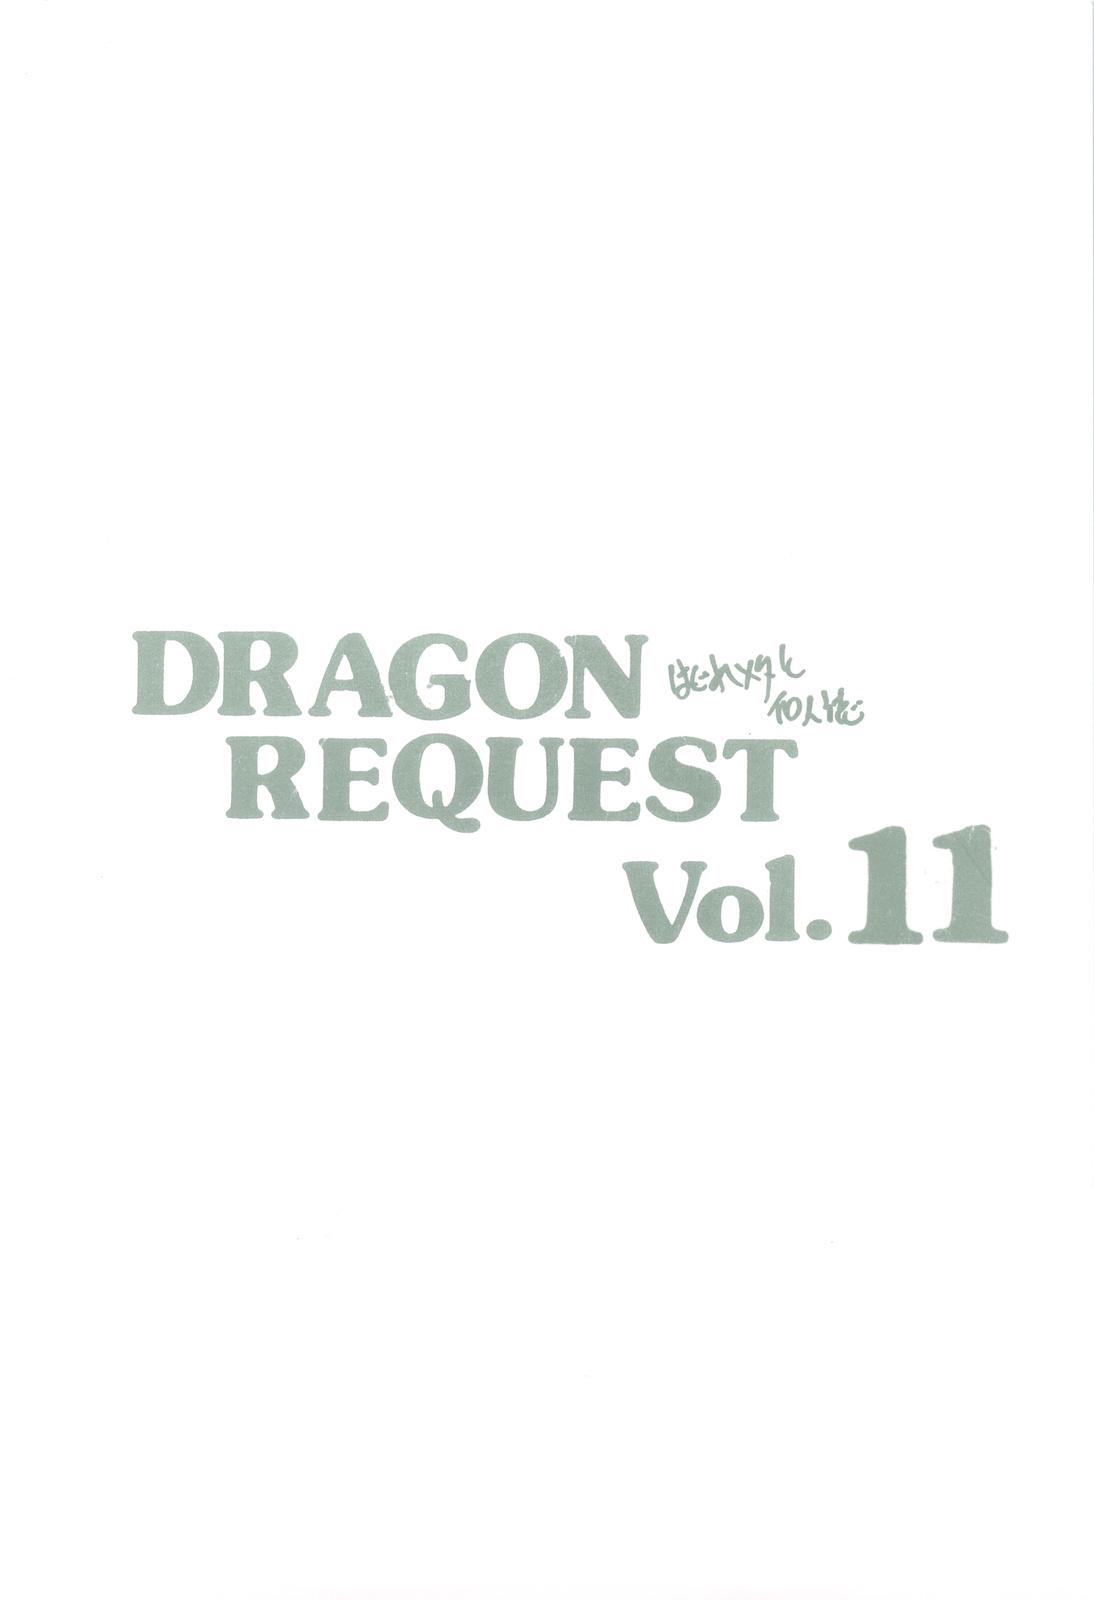 Husband DRAGON REQUEST Vol. 11 - Dragon quest v Sluts - Page 16